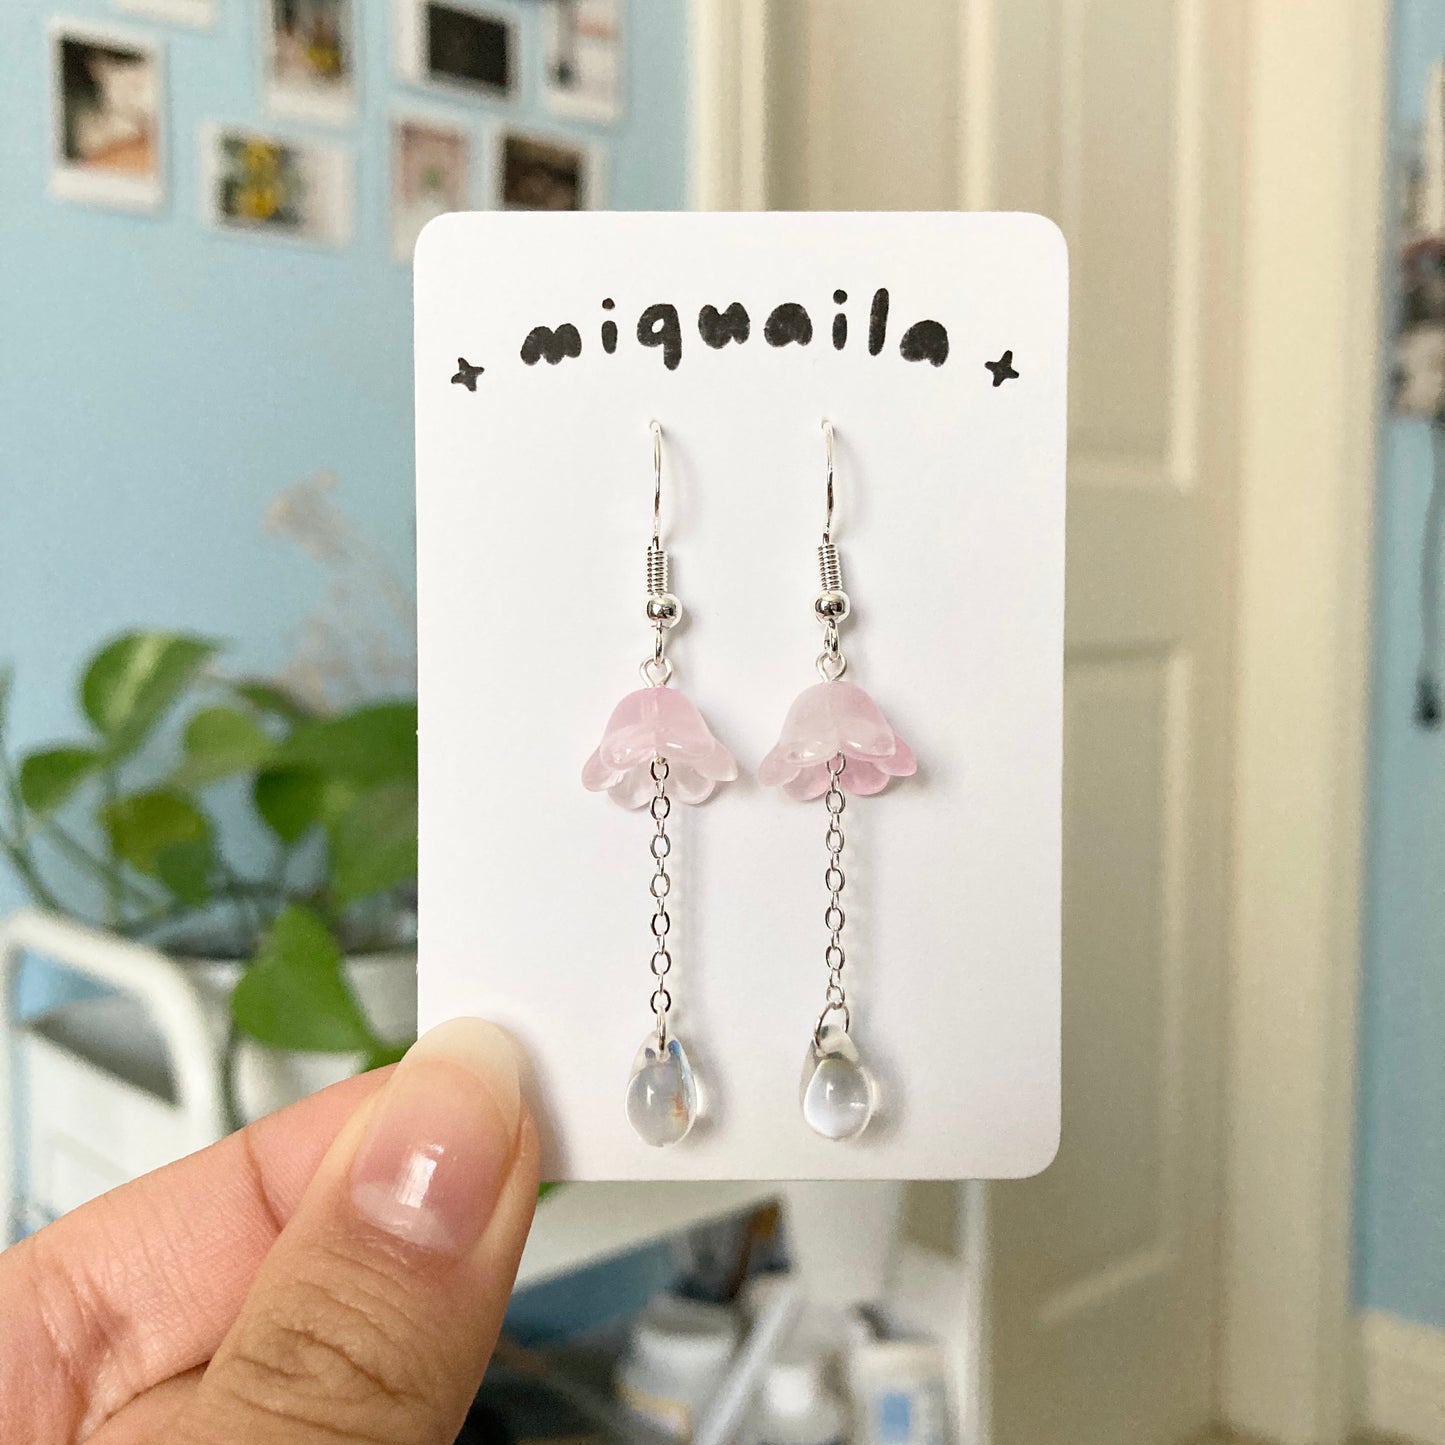 dewdrop earrings